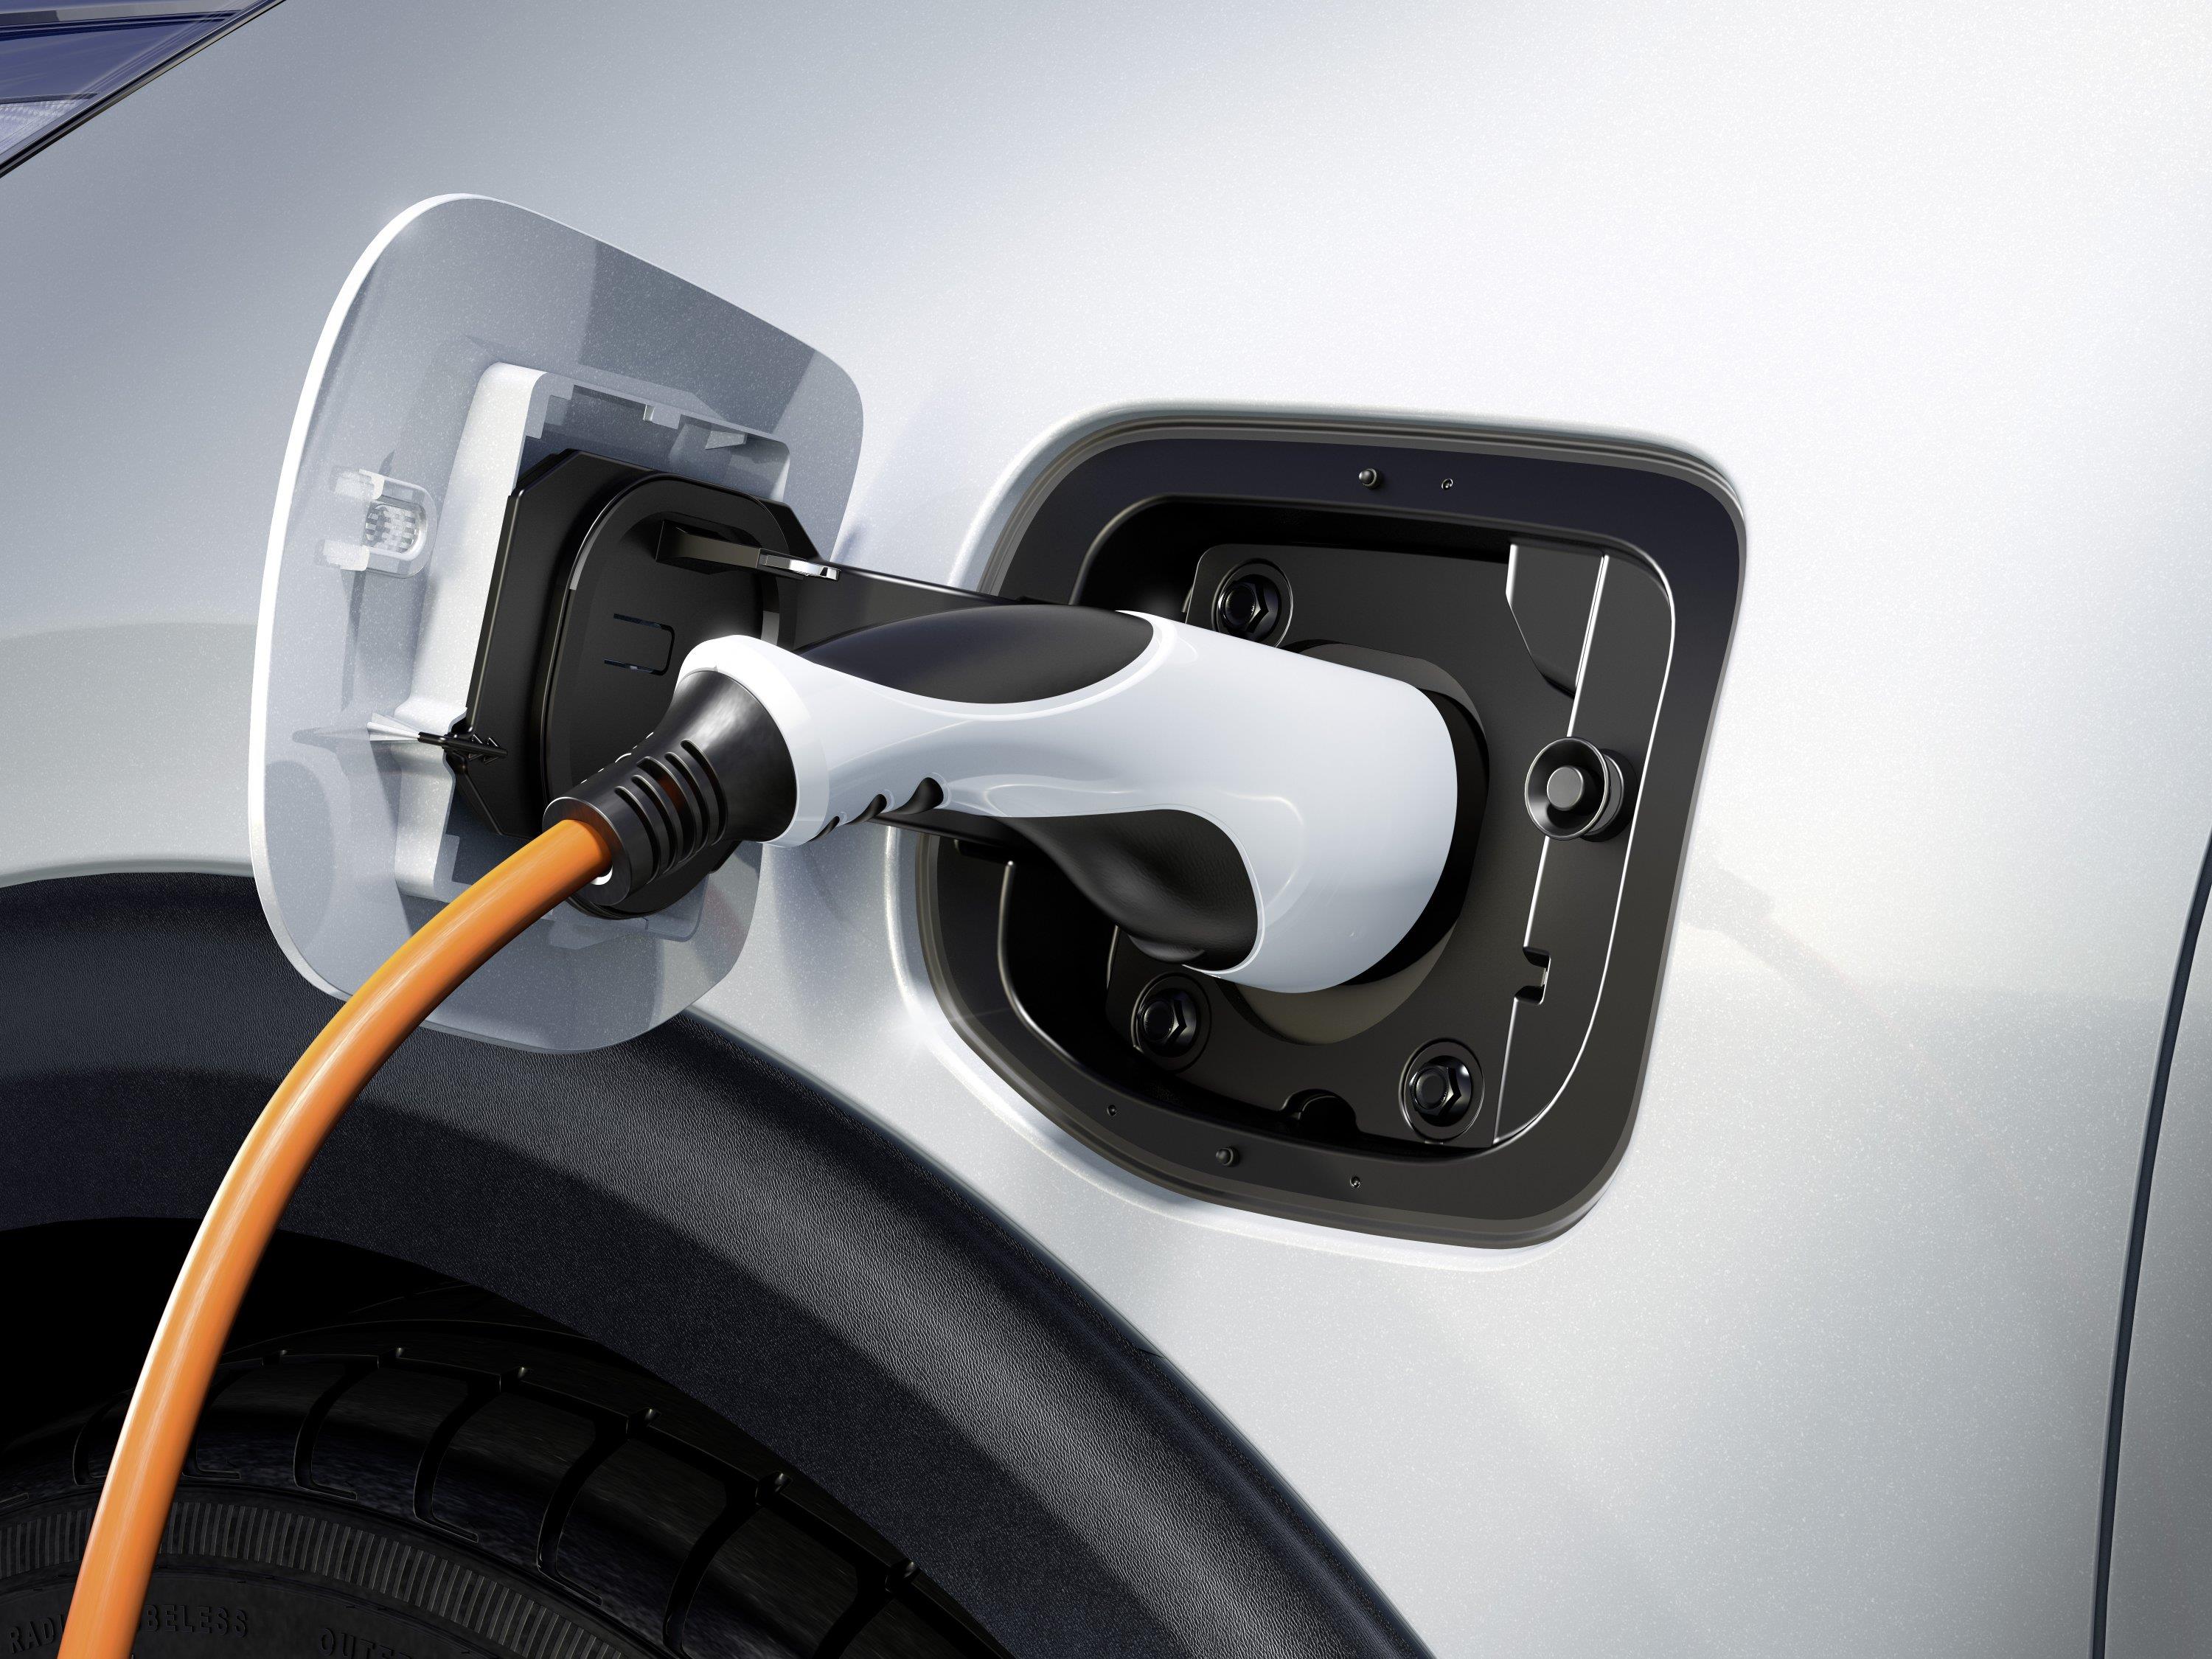 Hyundai & Kia Motors инвестирует в IONITY для демократизации мощной сети зарядки электромобилей